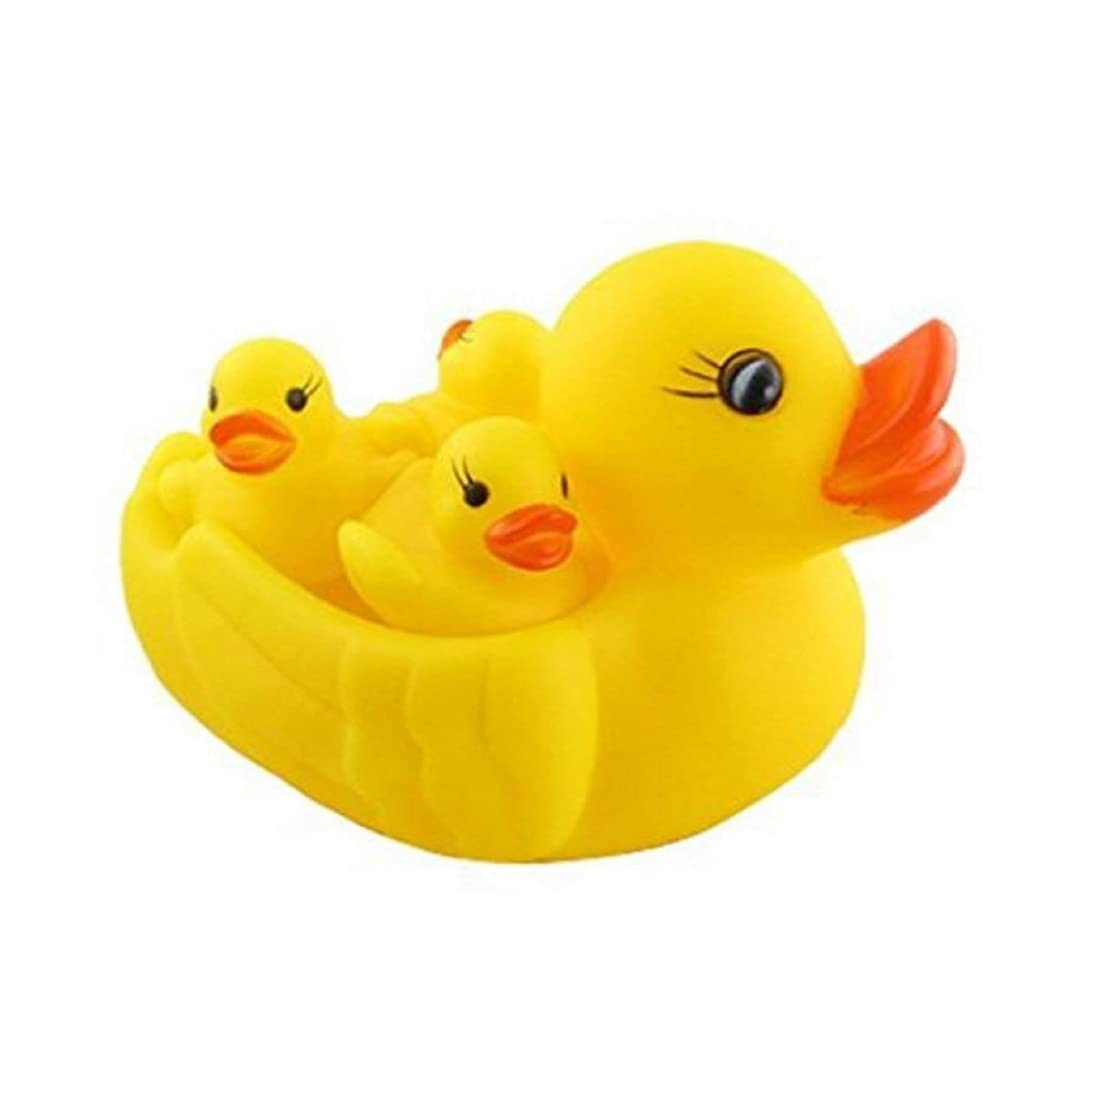 Pancikaa Bathtub Toys for Toddler3